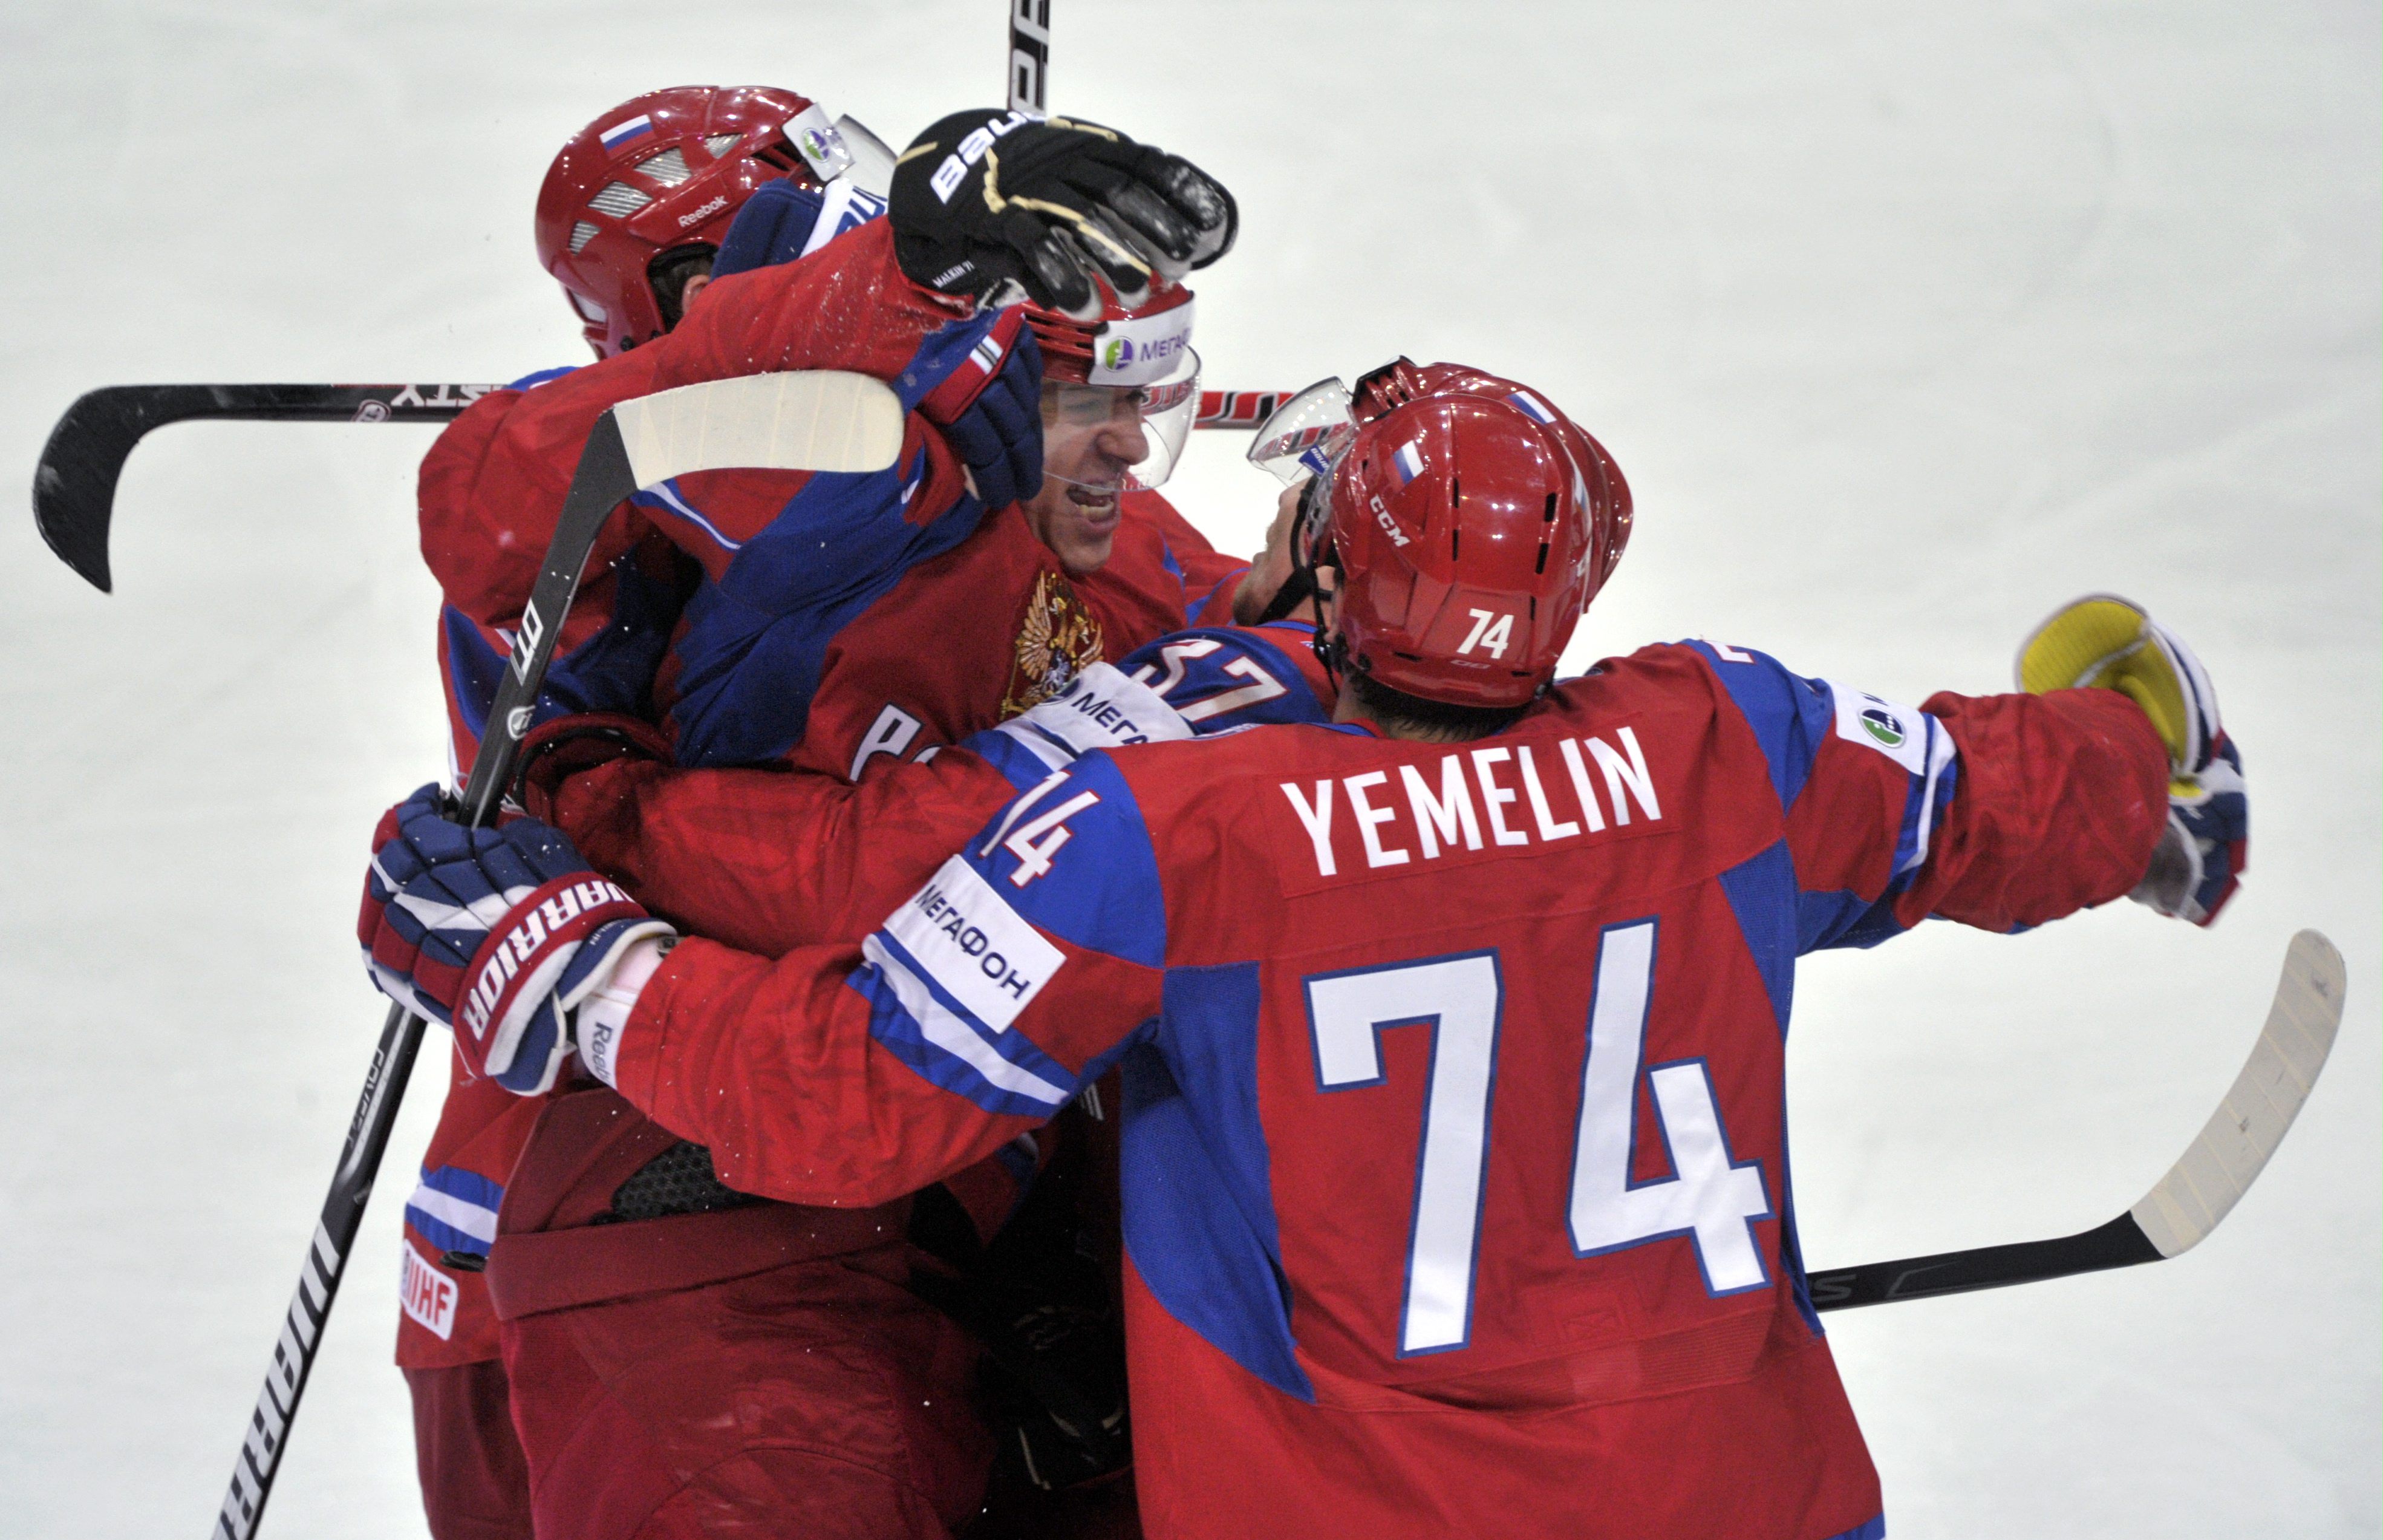 Ryssland är det första laget att ta sig till final i VM. I finalen får de möta antingen Tjeckien eller Slovakien.